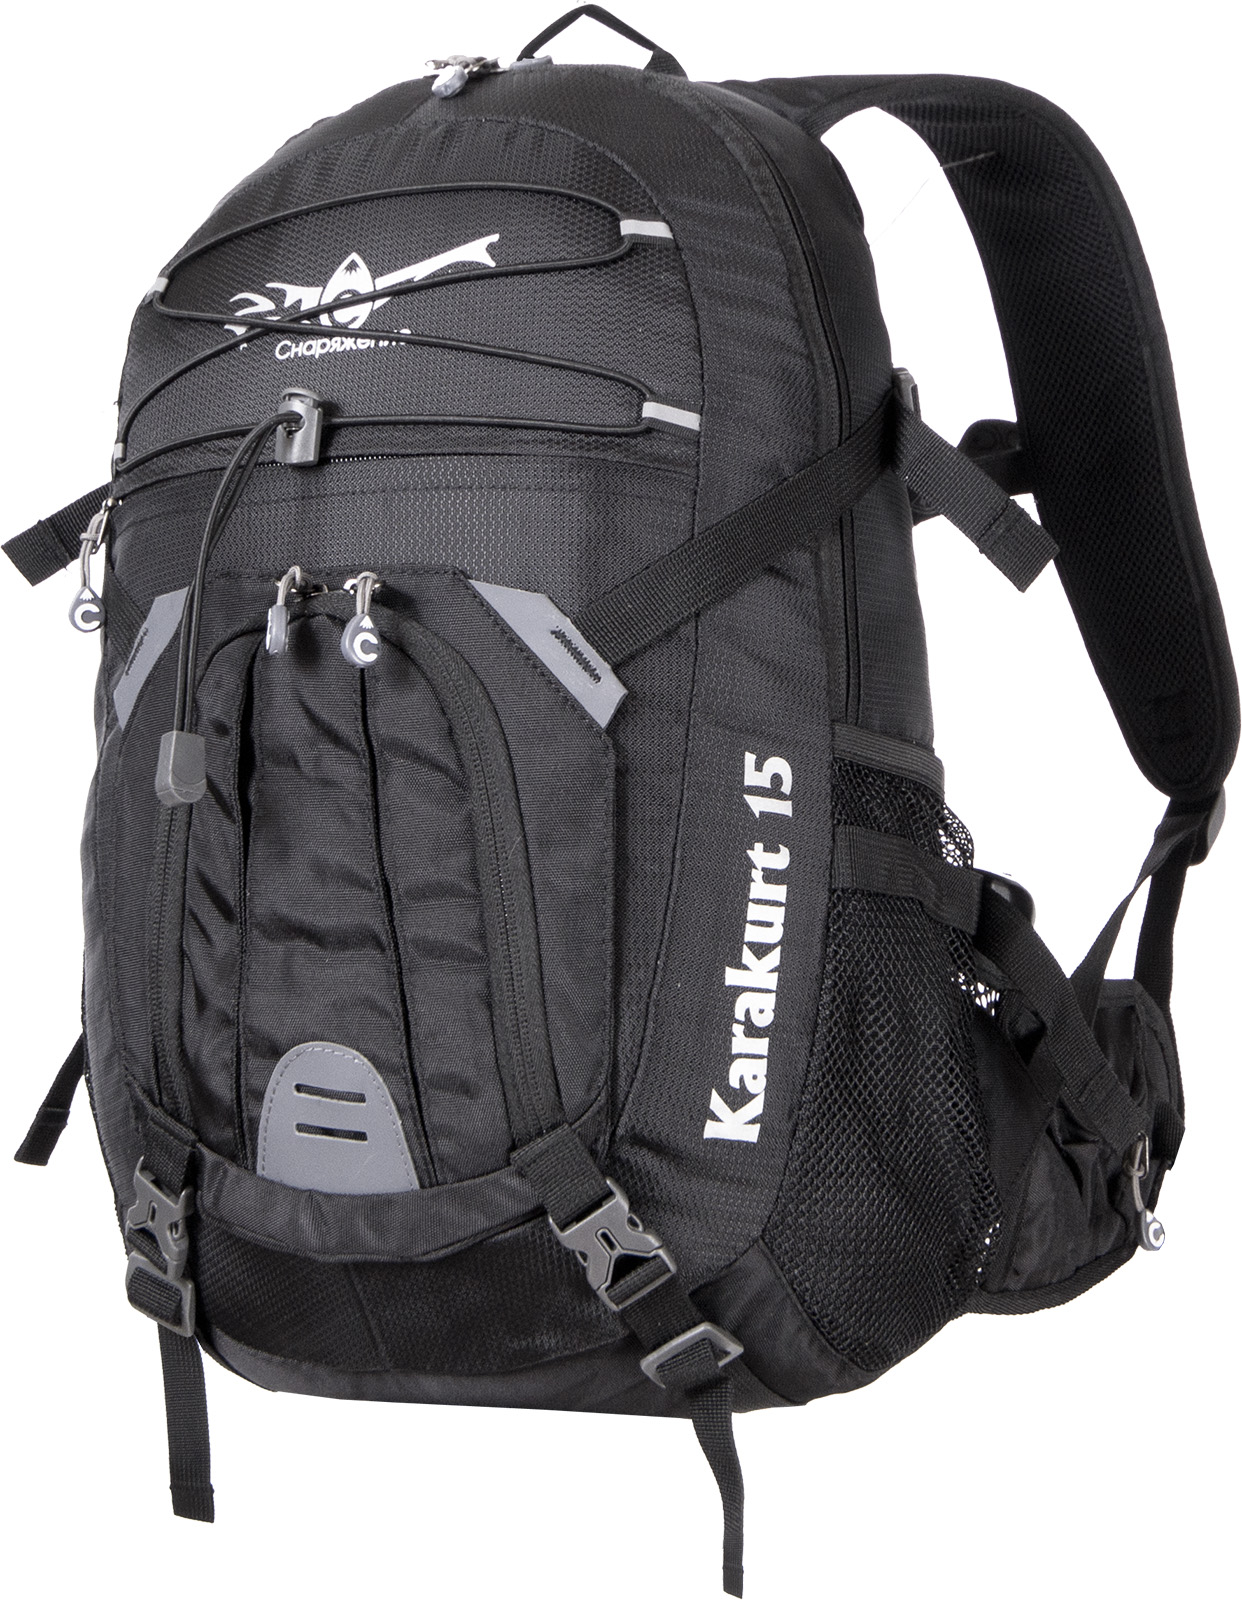 Стильный рюкзак Снаряжение Karakurt 15